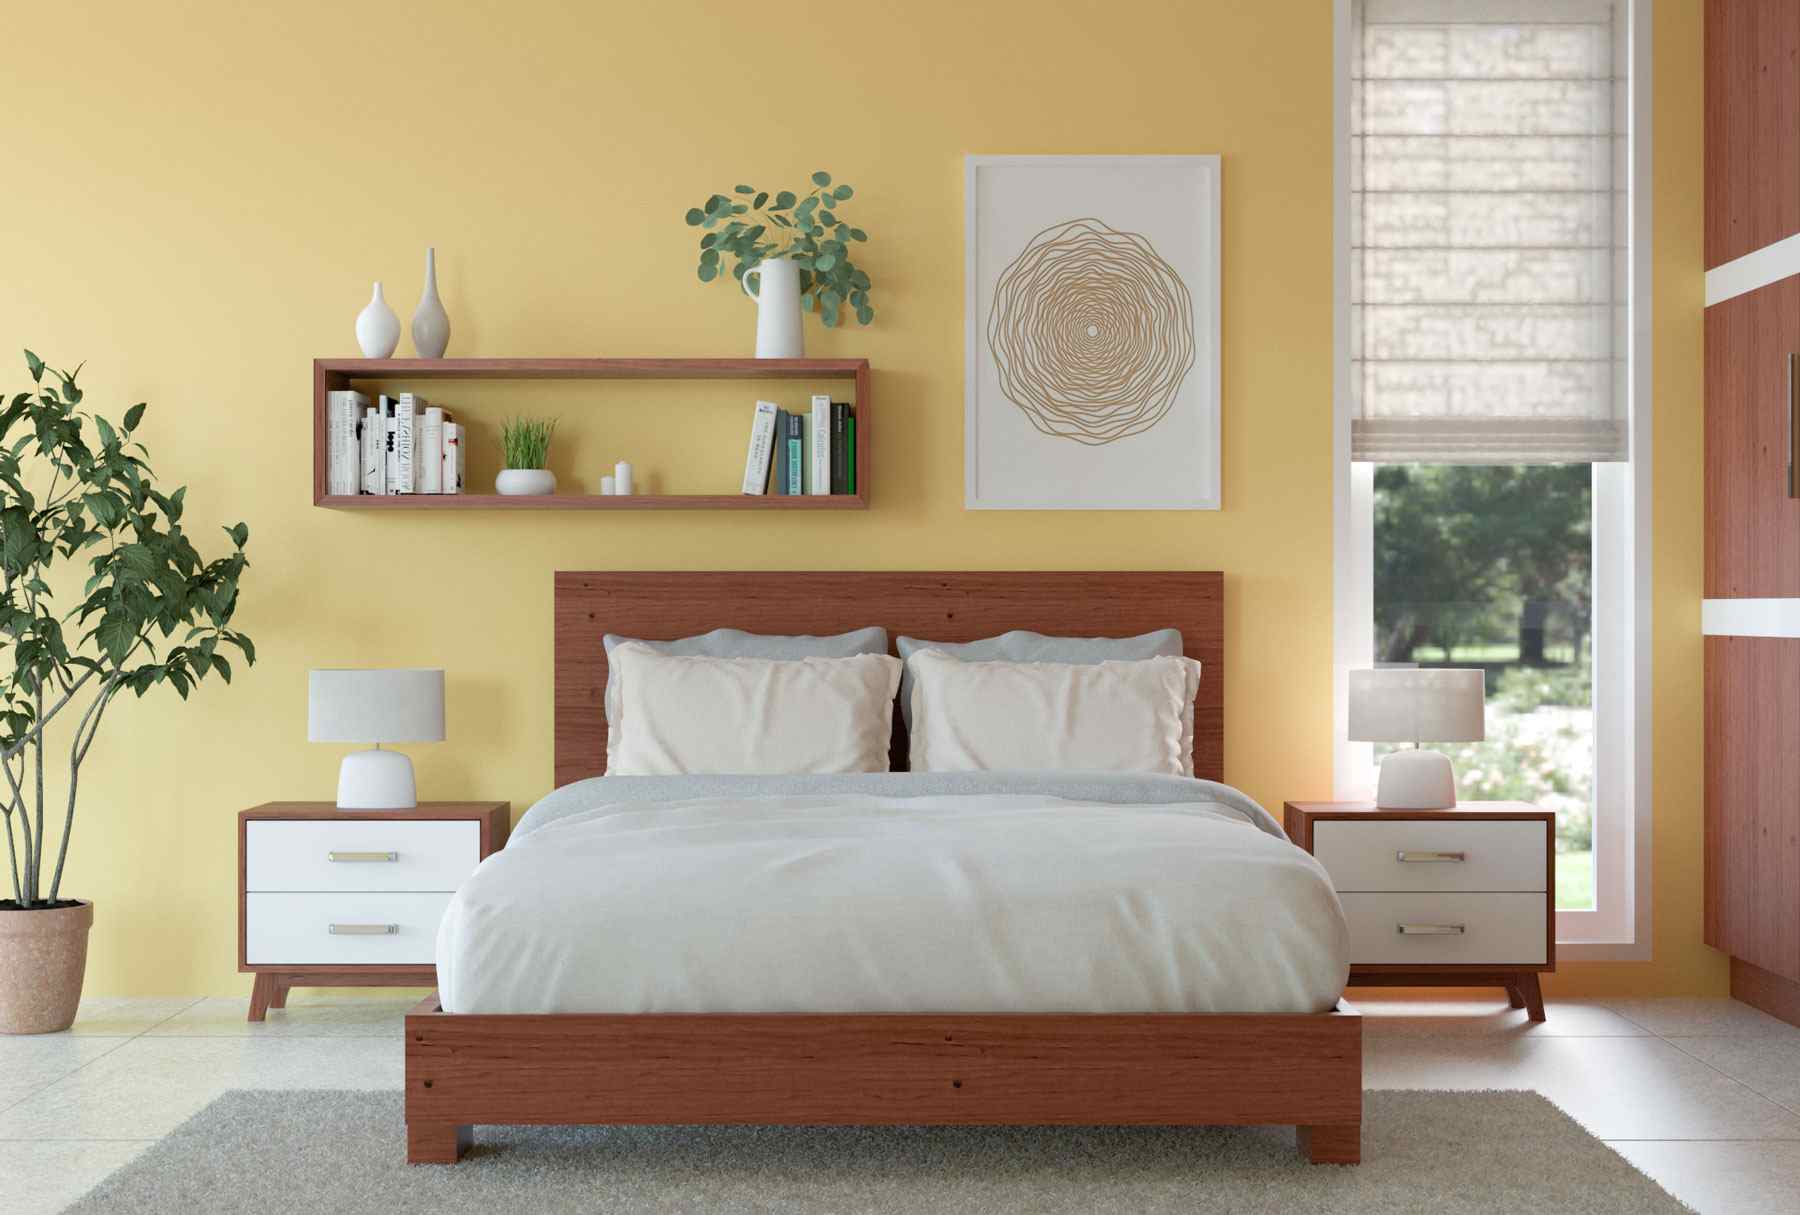 20 ý tưởng how to decorate a bed room thoải mái và tuyệt đẹp